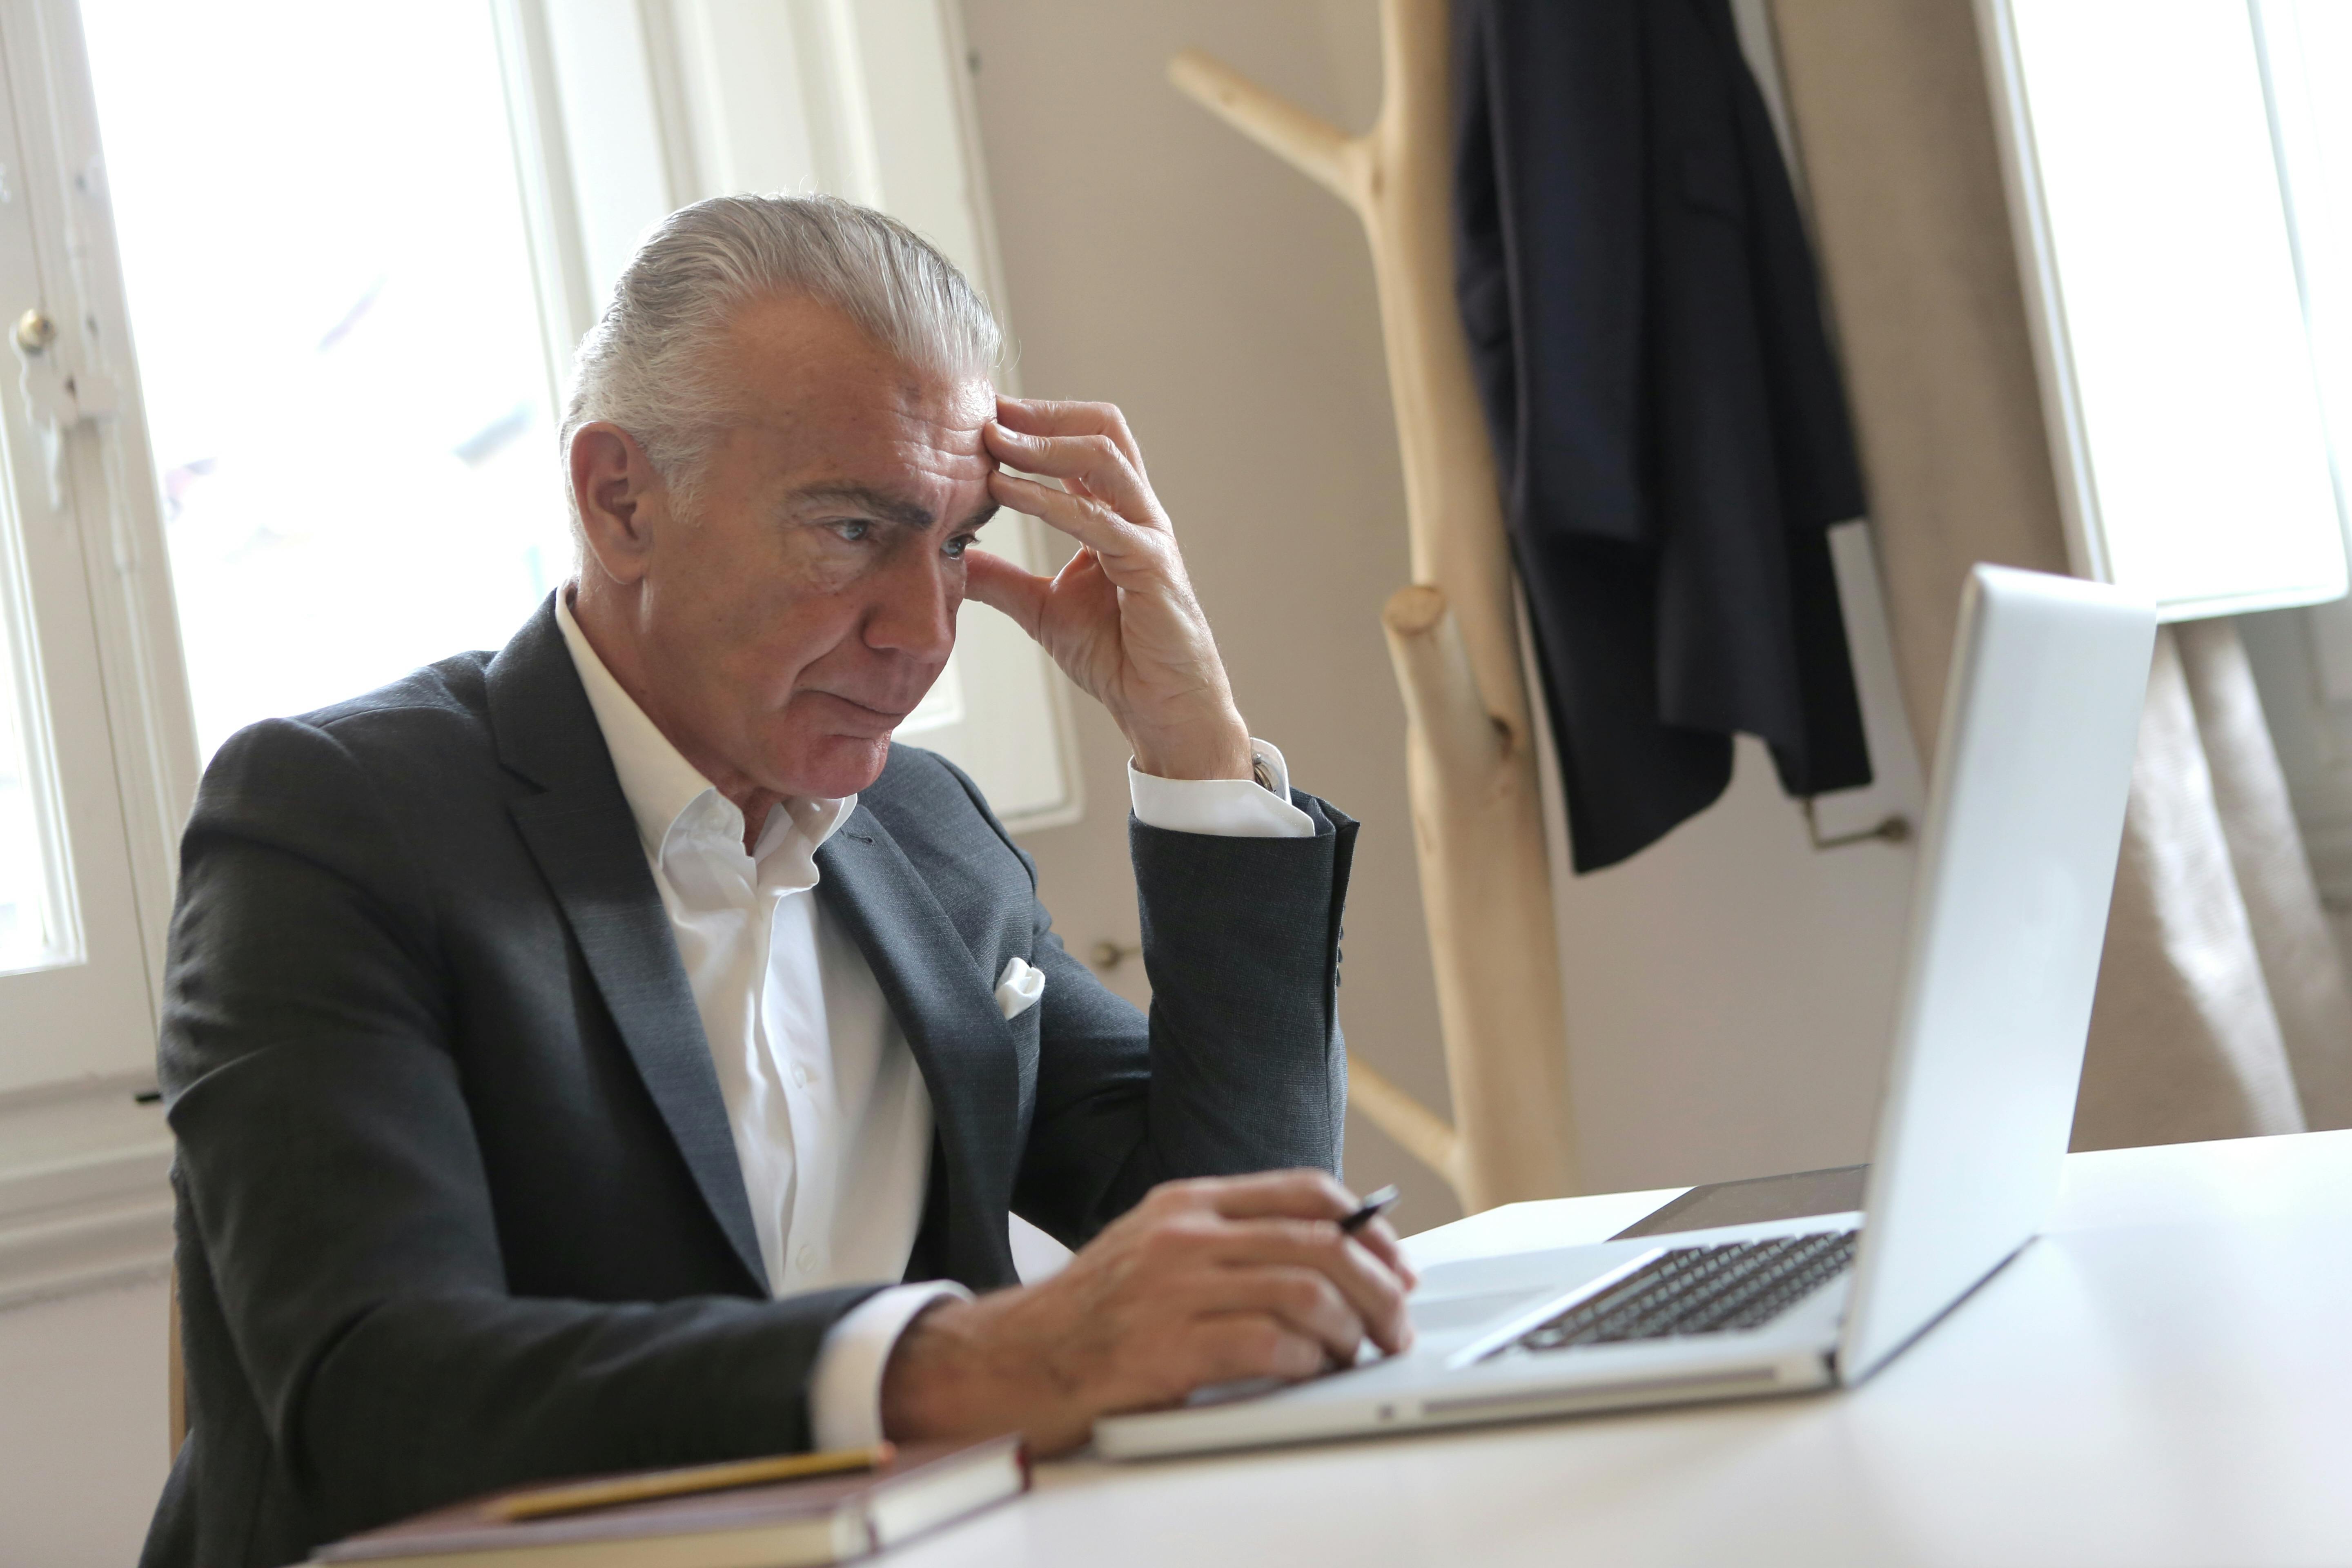 Ein gestresster älterer Mann sitzt mit der Hand an der Schläfe, während er einen Stift hält und auf seinen Laptop schaut | Quelle: Pexels